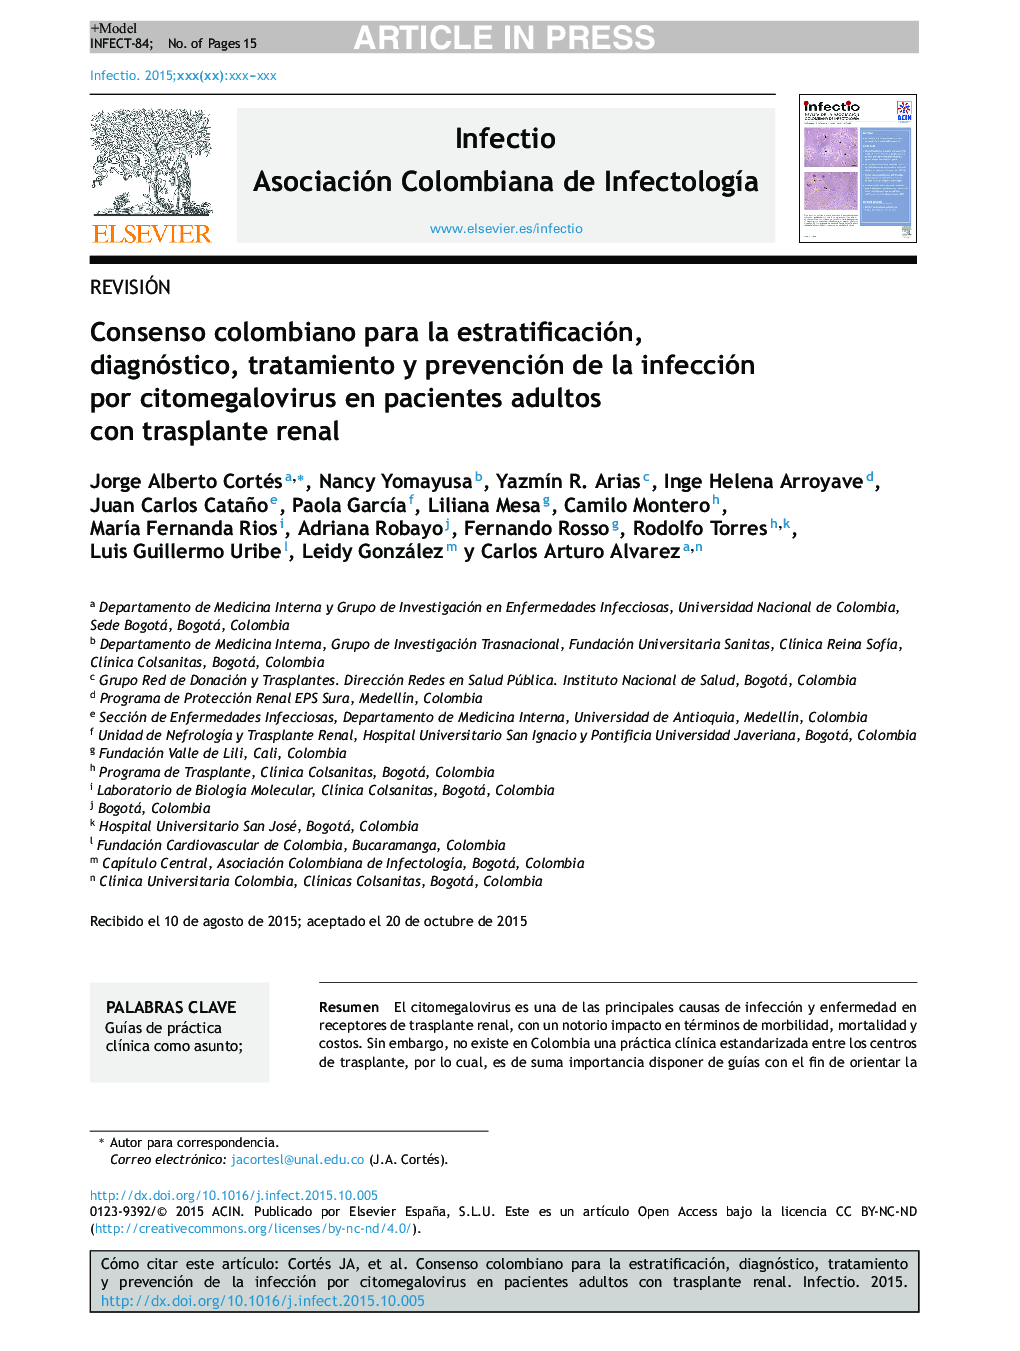 Consenso colombiano para la estratificación, diagnóstico, tratamiento y prevención de la infección por citomegalovirus en pacientes adultos con trasplante renal